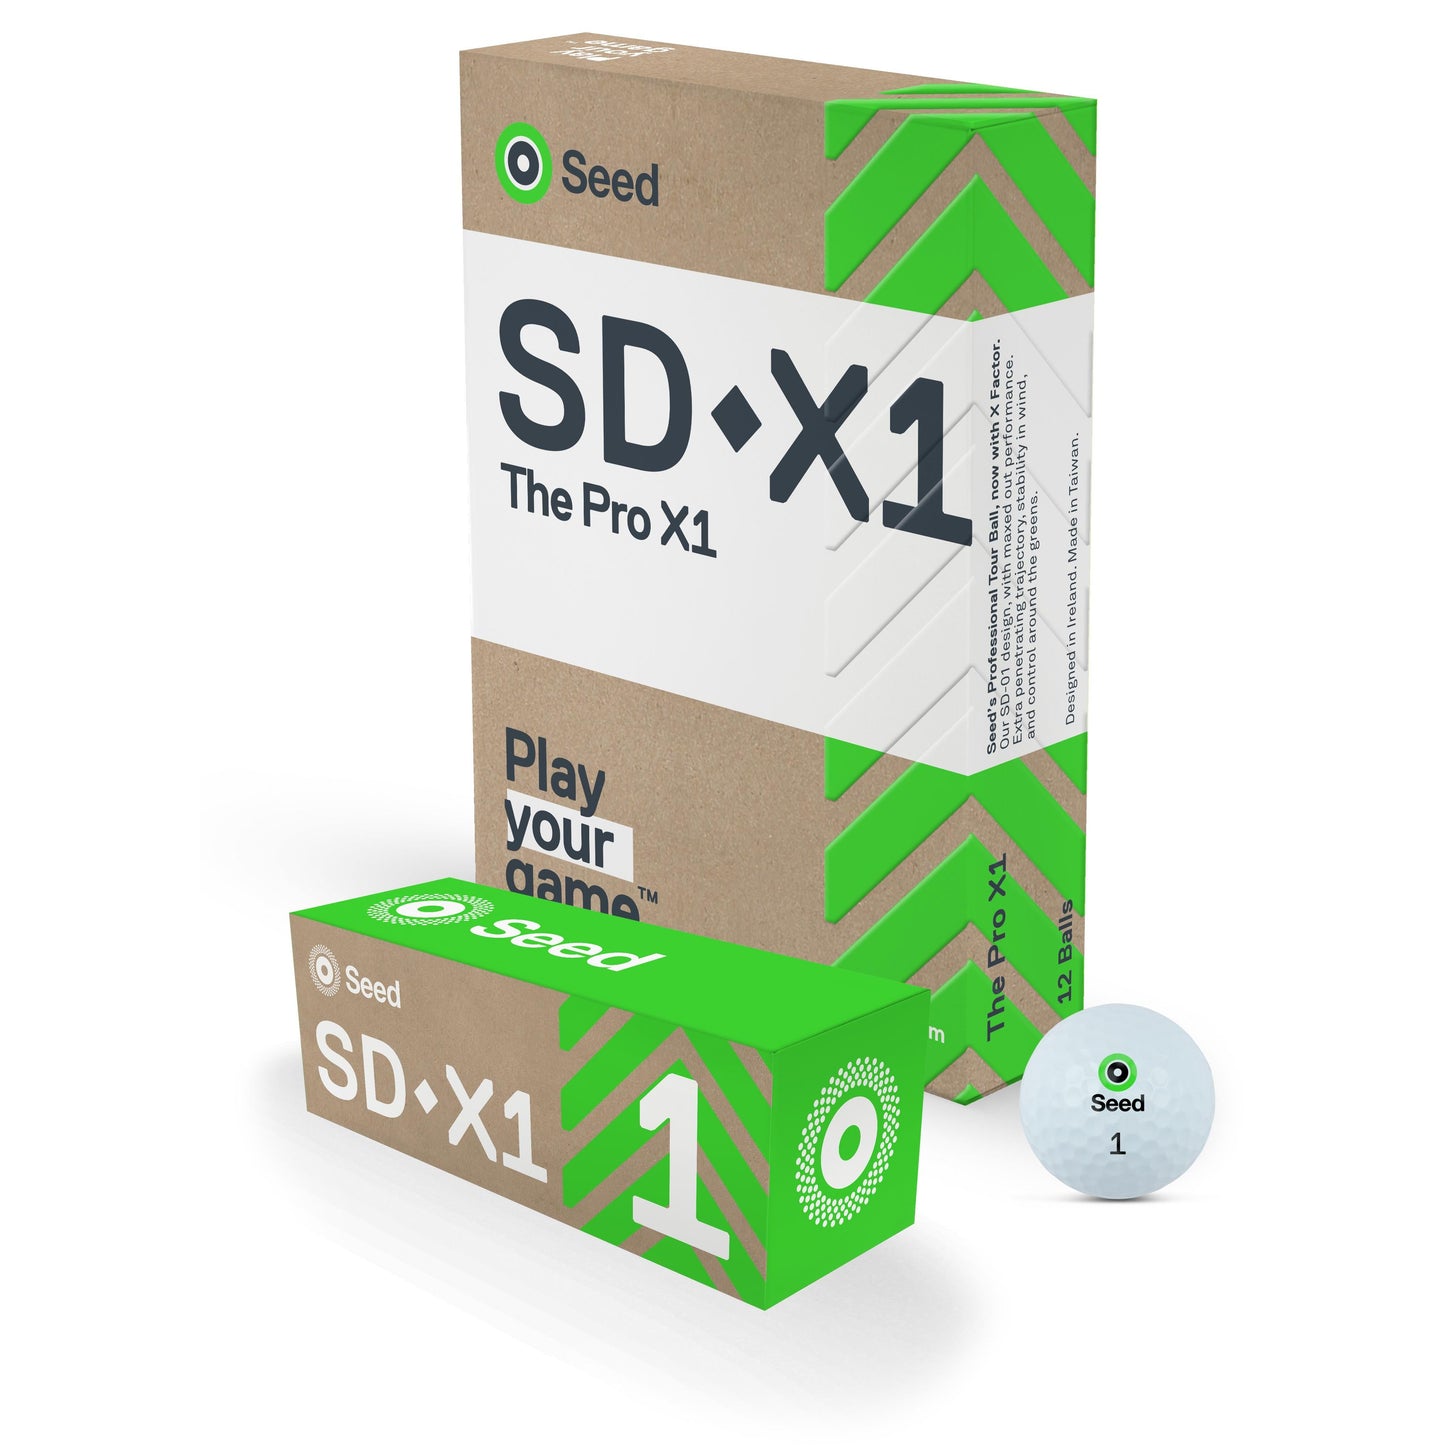 SD-X1 The Pro X1